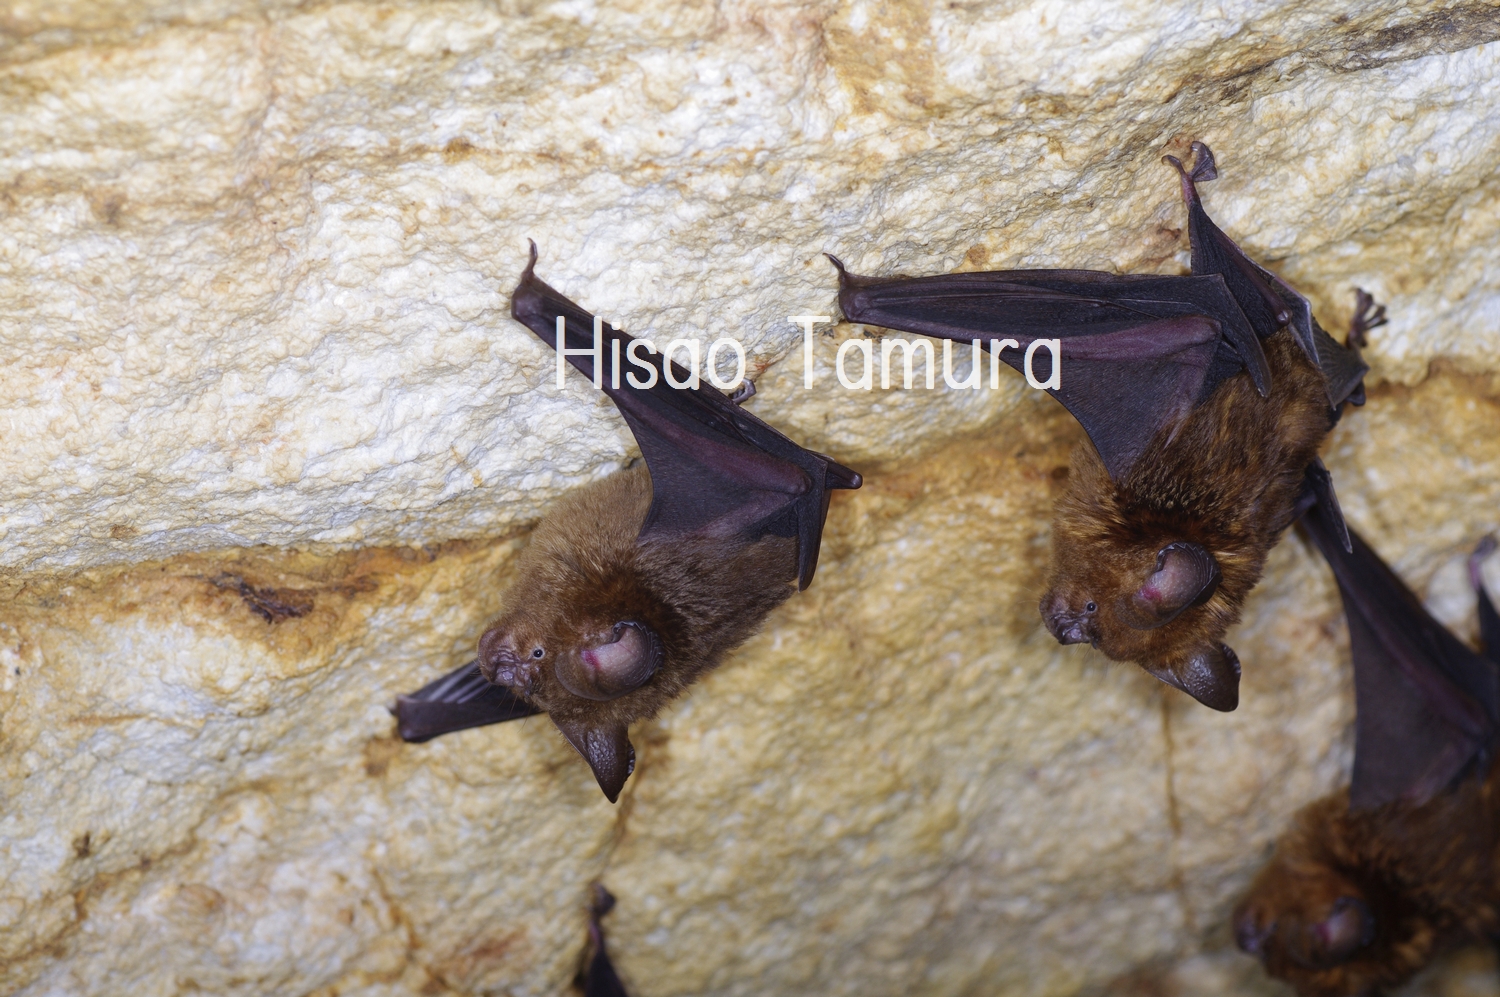 このほかの環境に見られる種 沖縄県レッドデータブック 沖縄県の絶滅のおそれのある野生生物